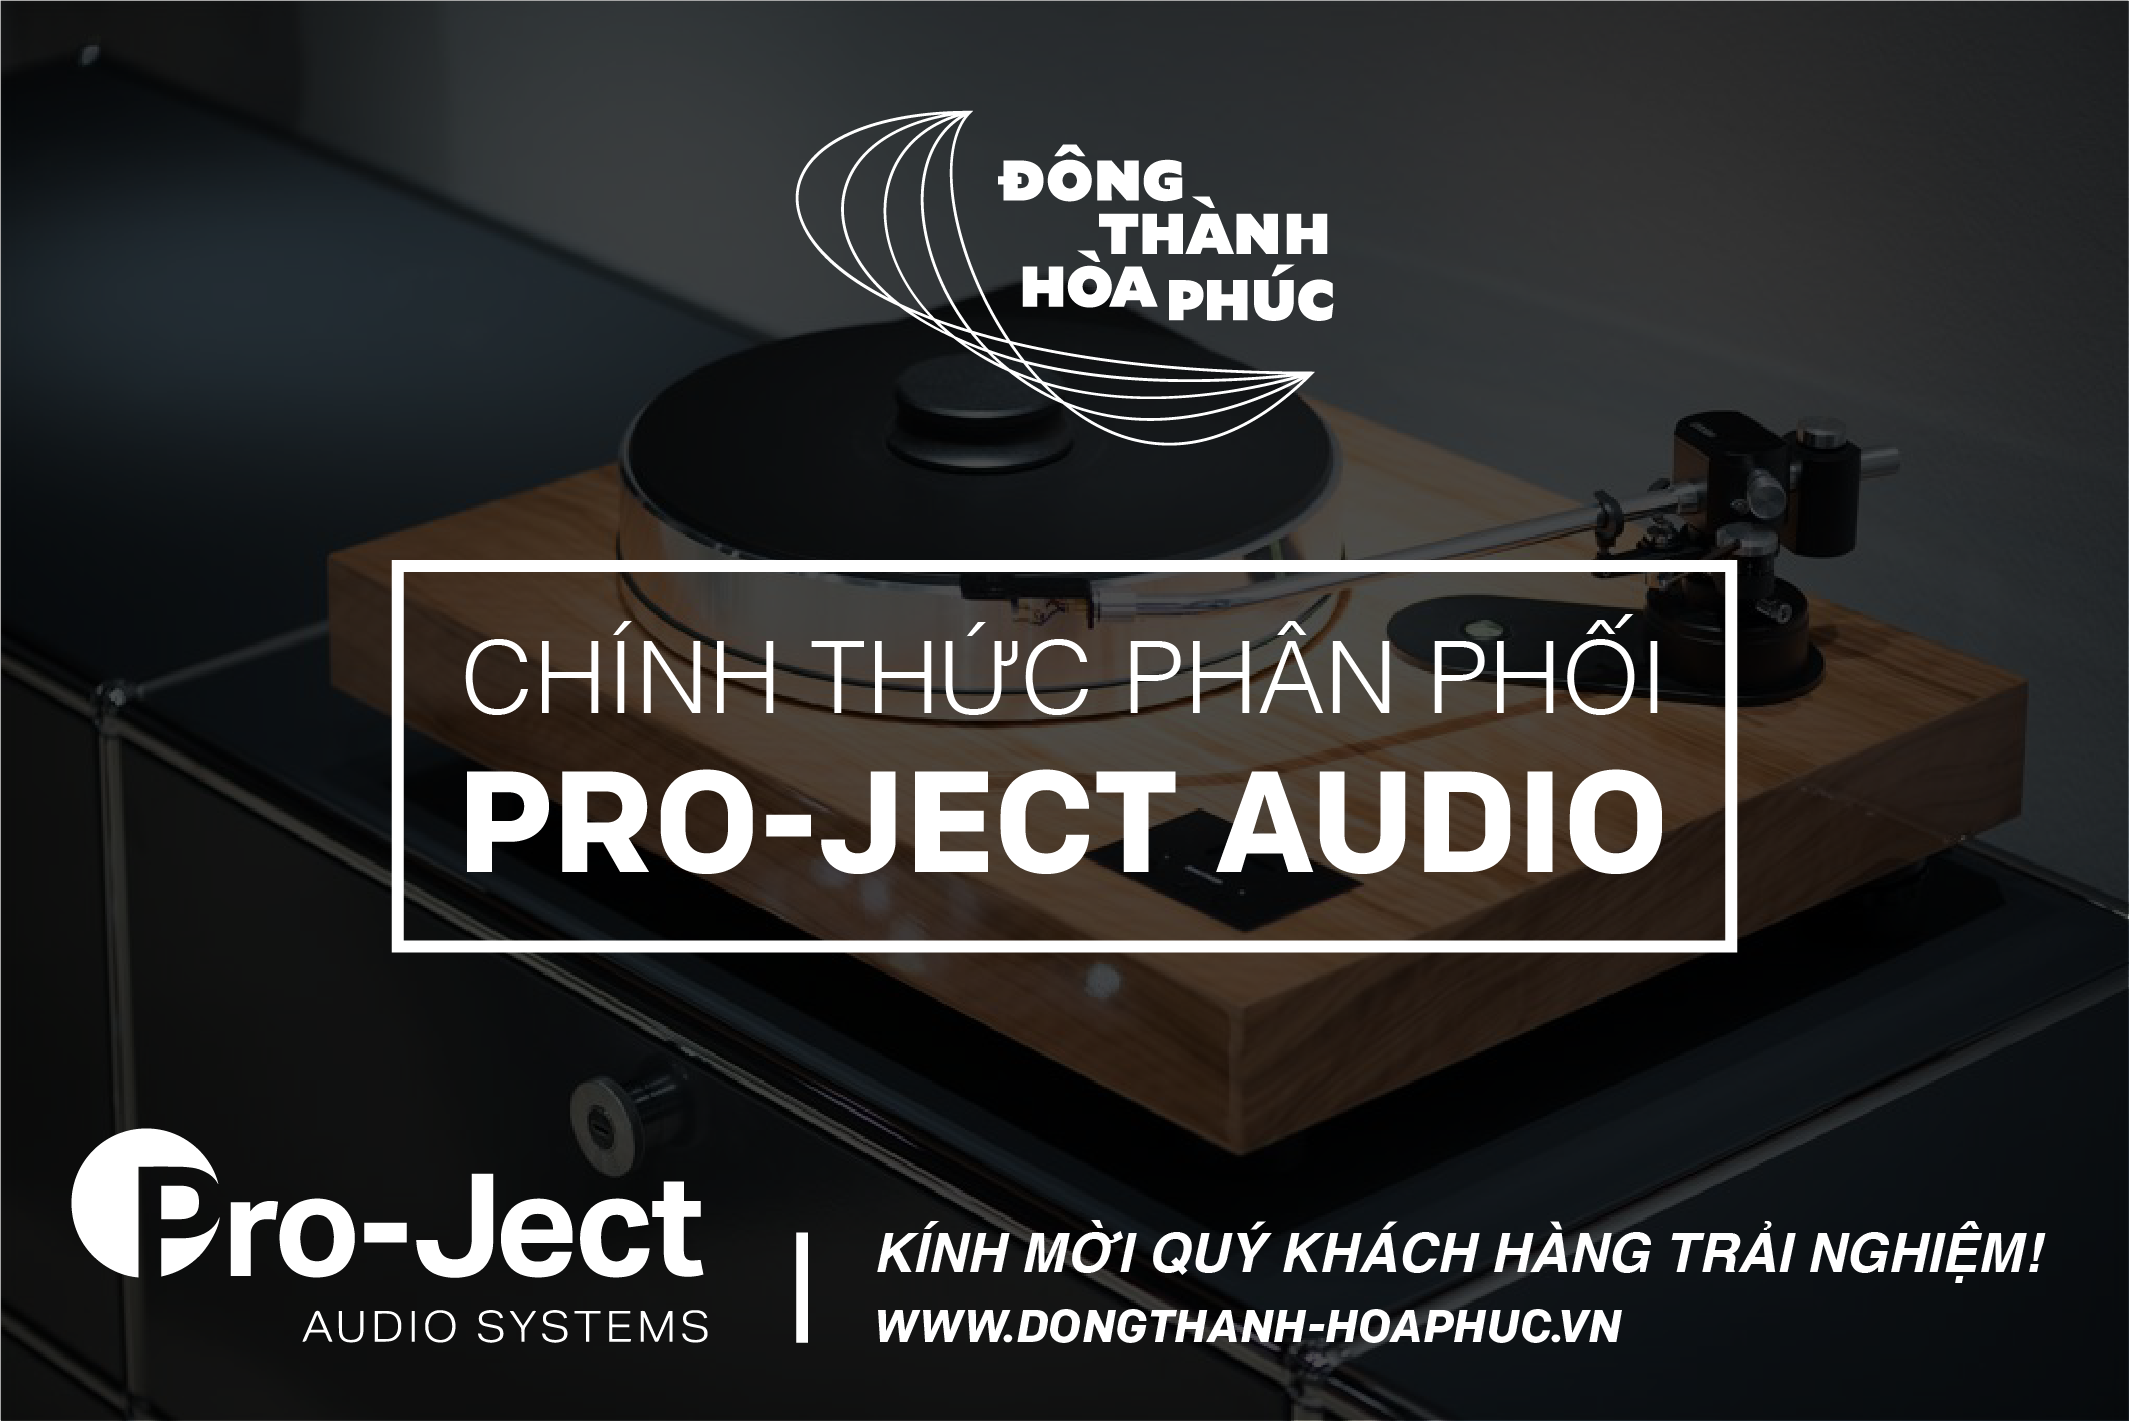 Pro-Ject Audio Đông Thành - Hòa Phúc